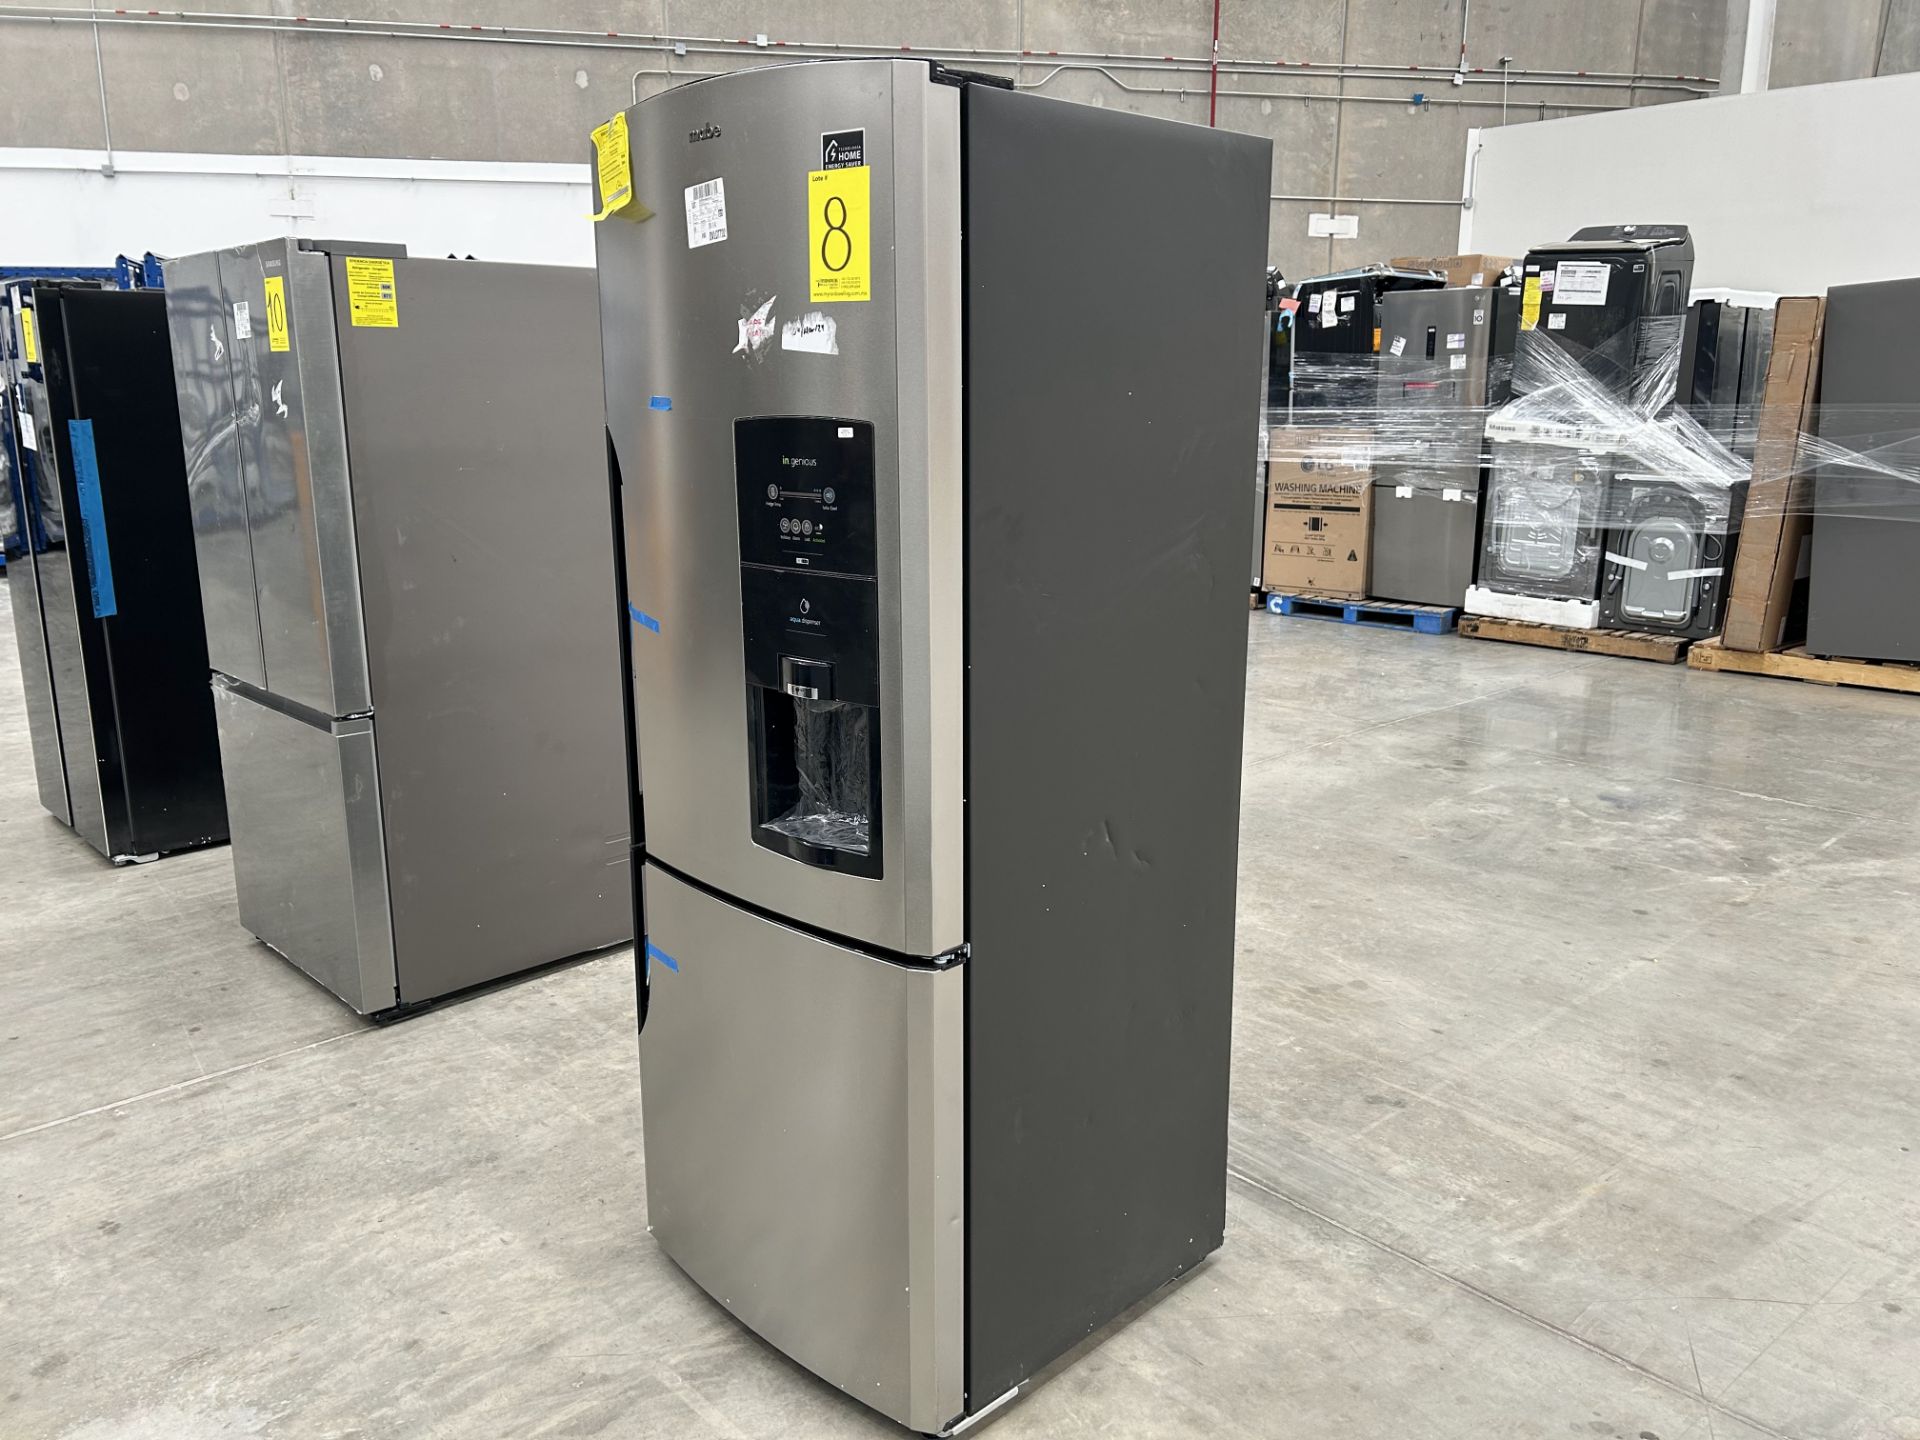 1 refrigerador con dispensador de agua Marca MABE, Modelo RMB520IBMRX, Serie 08447, Color GRIS (No - Image 2 of 6